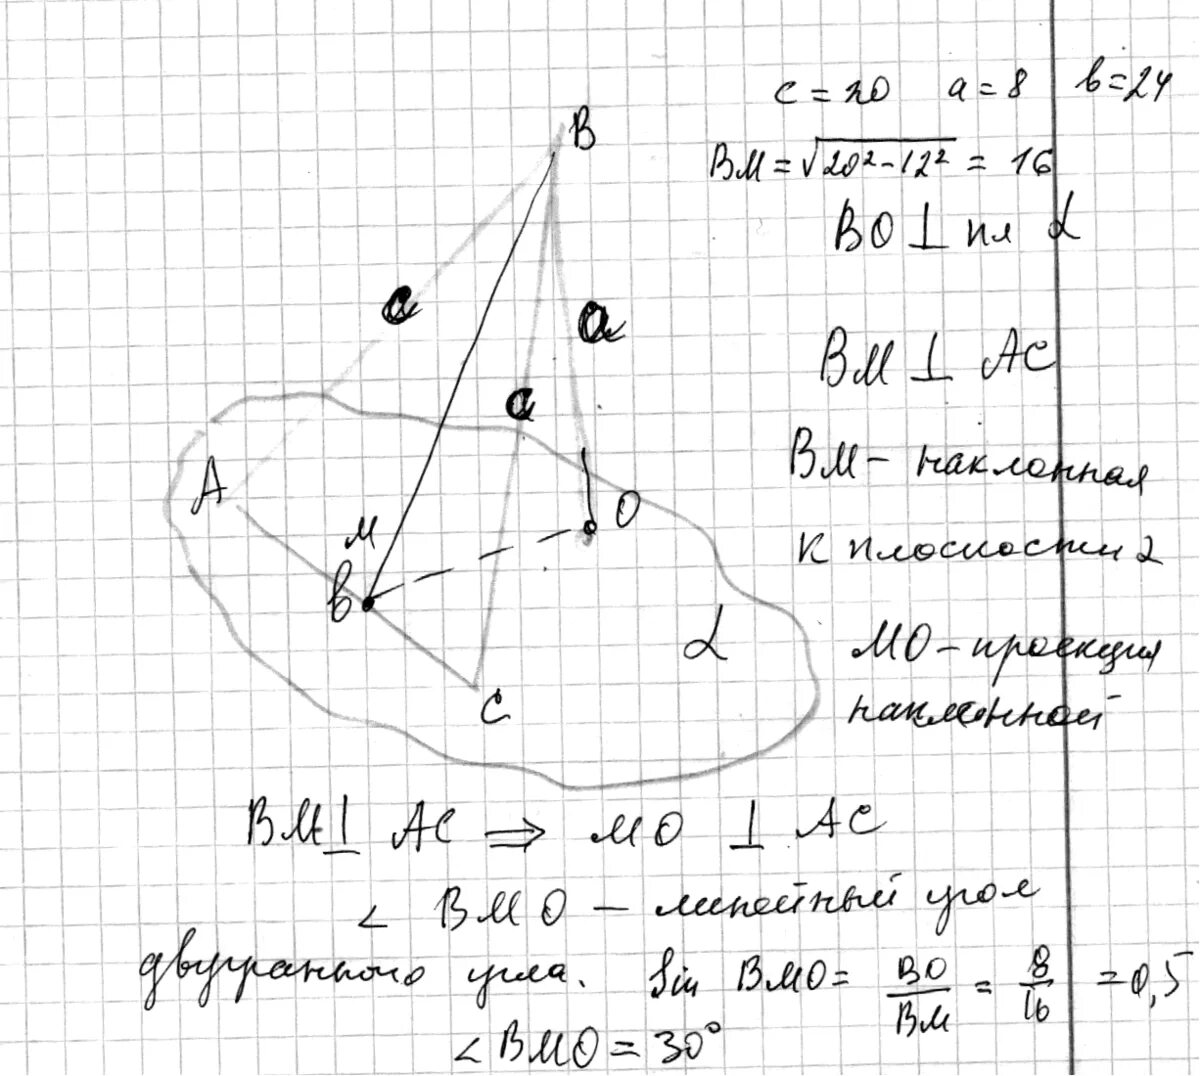 Через вершины треугольника abc. Основание AC равнобедренного треугольника лежит в плоскости. AC принадлежит плоскости. Через сторону AC треугольника ABC проведена плоскость Альфа. Основание АС равнобедренного треугольника лежит в плоскости а.